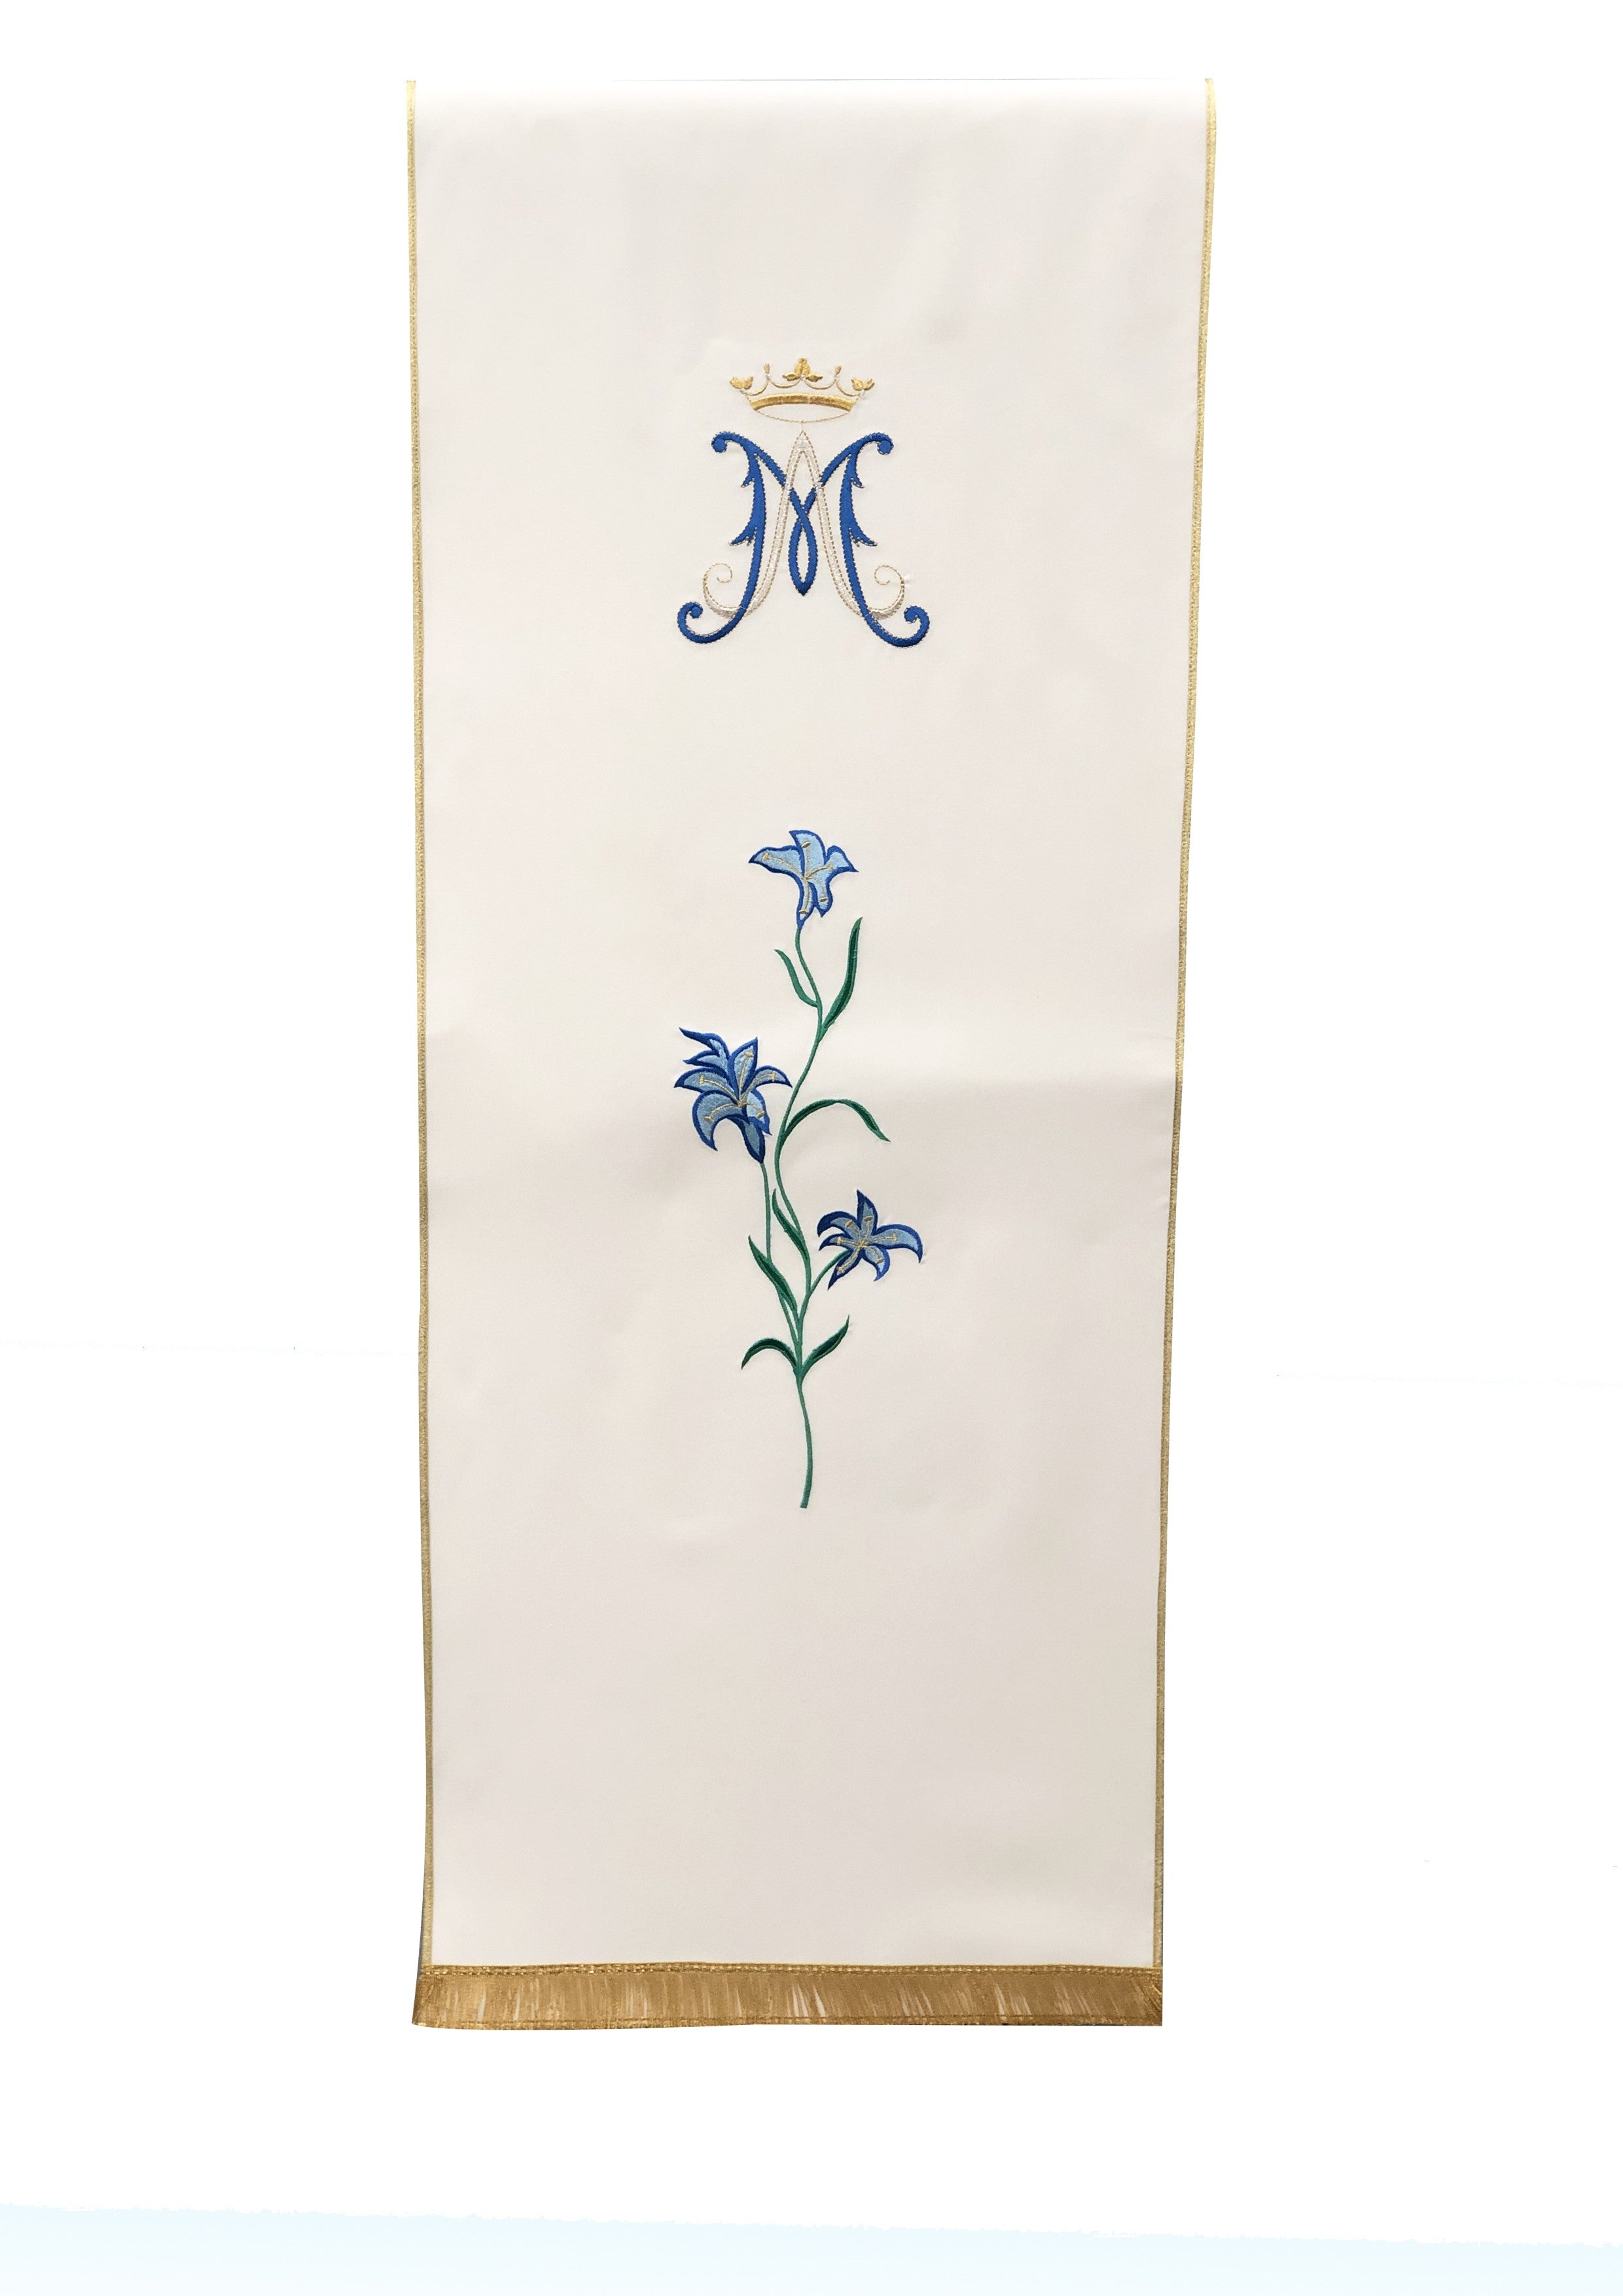 Coprileggio Liturgico bianco con monogramma mariano e gigli in tela poliestere